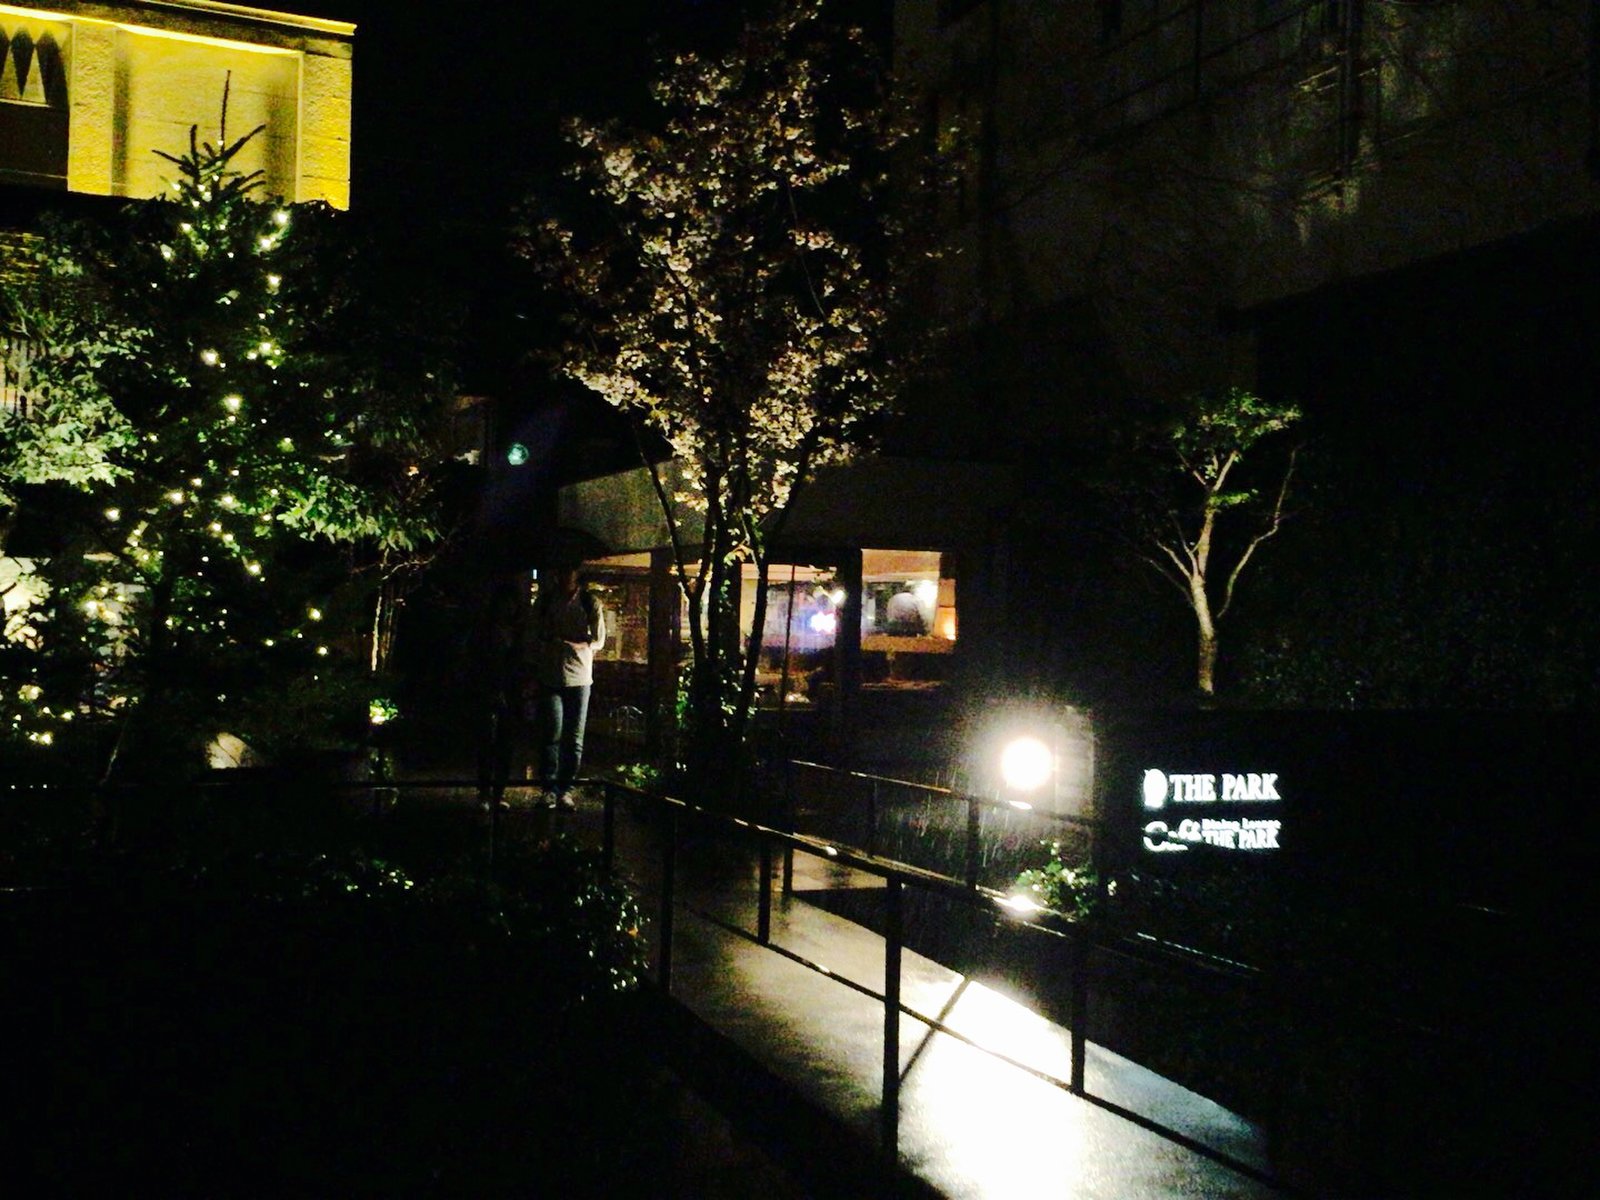 米子で夜カフェ 加茂川沿いにある最強のおしゃれカフェ カフェザパークへ行ってみよう Playlife プレイライフ